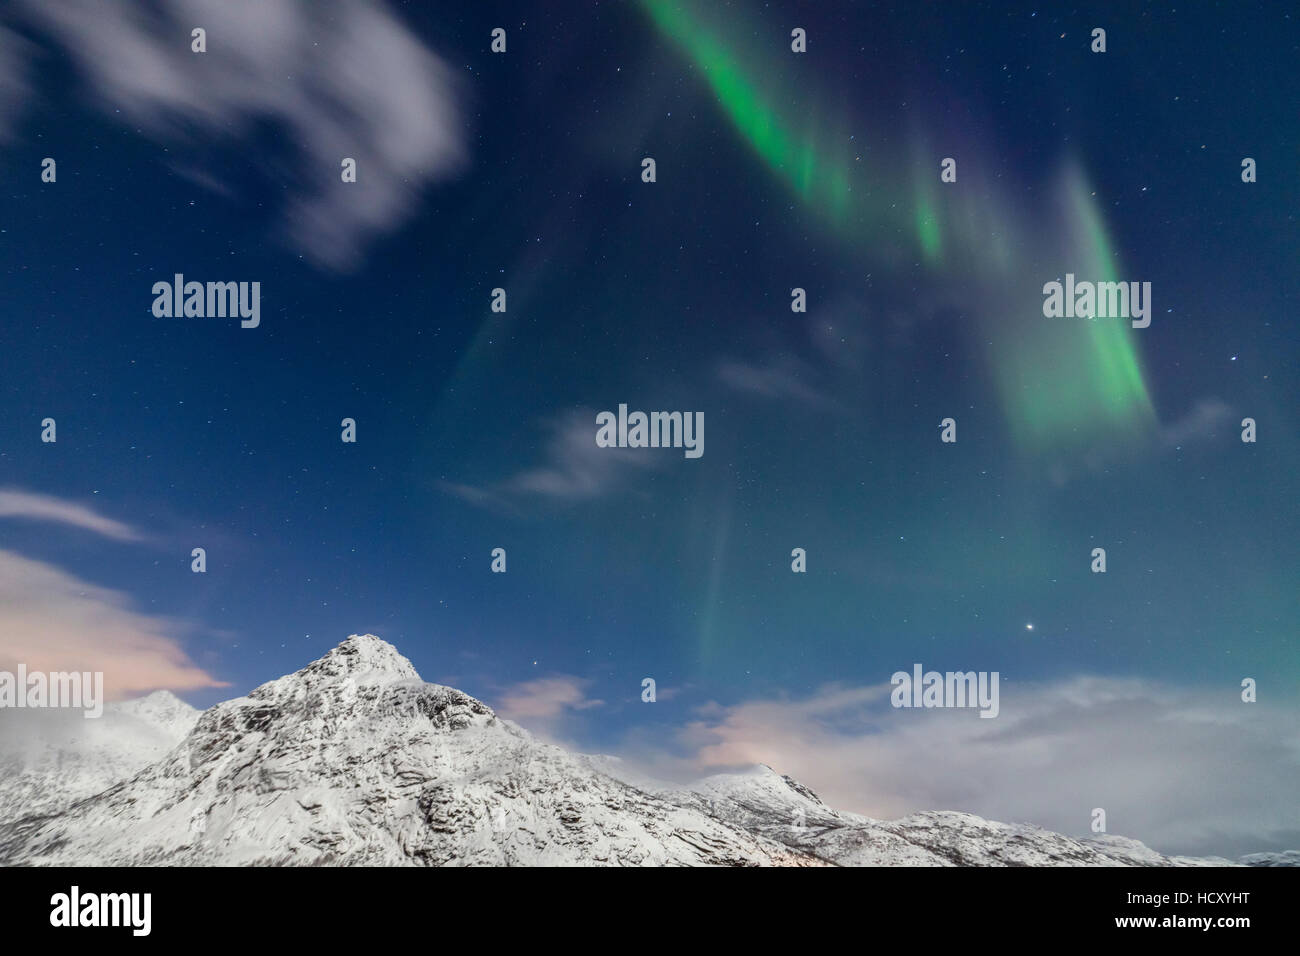 Luci del nord e stelle illuminano le cime innevate, Vareid, Flakstad, Nordland, Isole Lofoten, nel nord della Norvegia Foto Stock